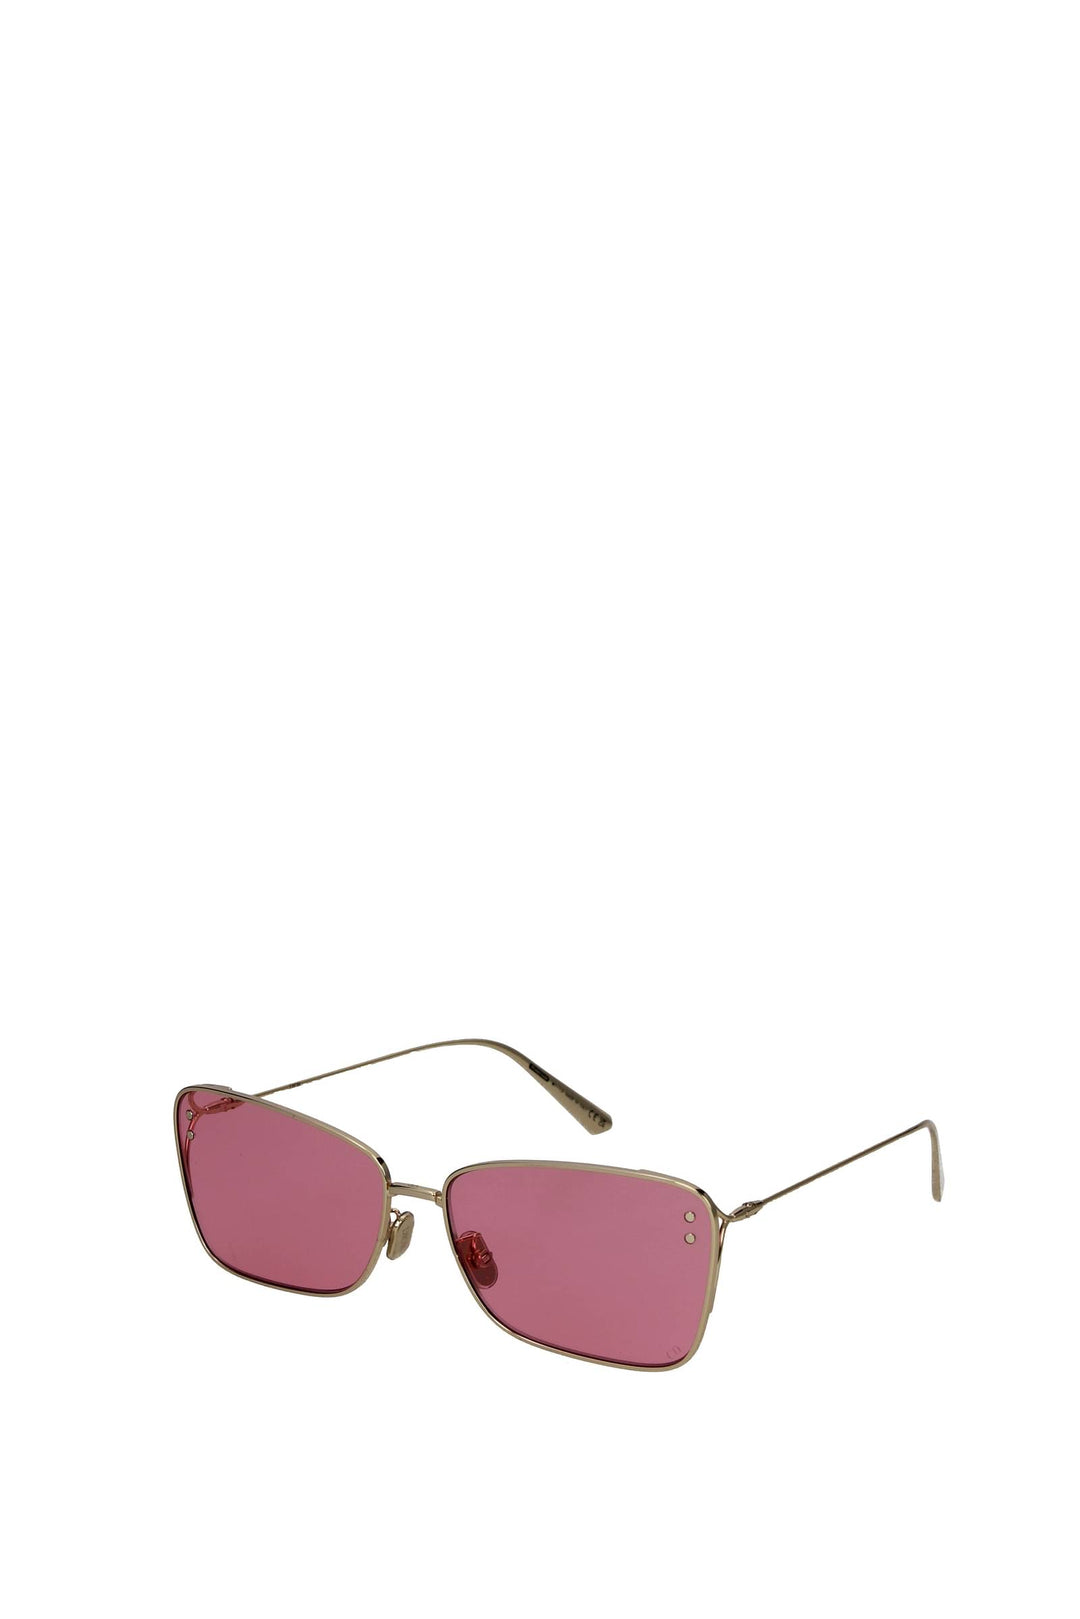 Occhiali Da Sole Missdior Metallo Oro Rosa - Christian Dior - Donna